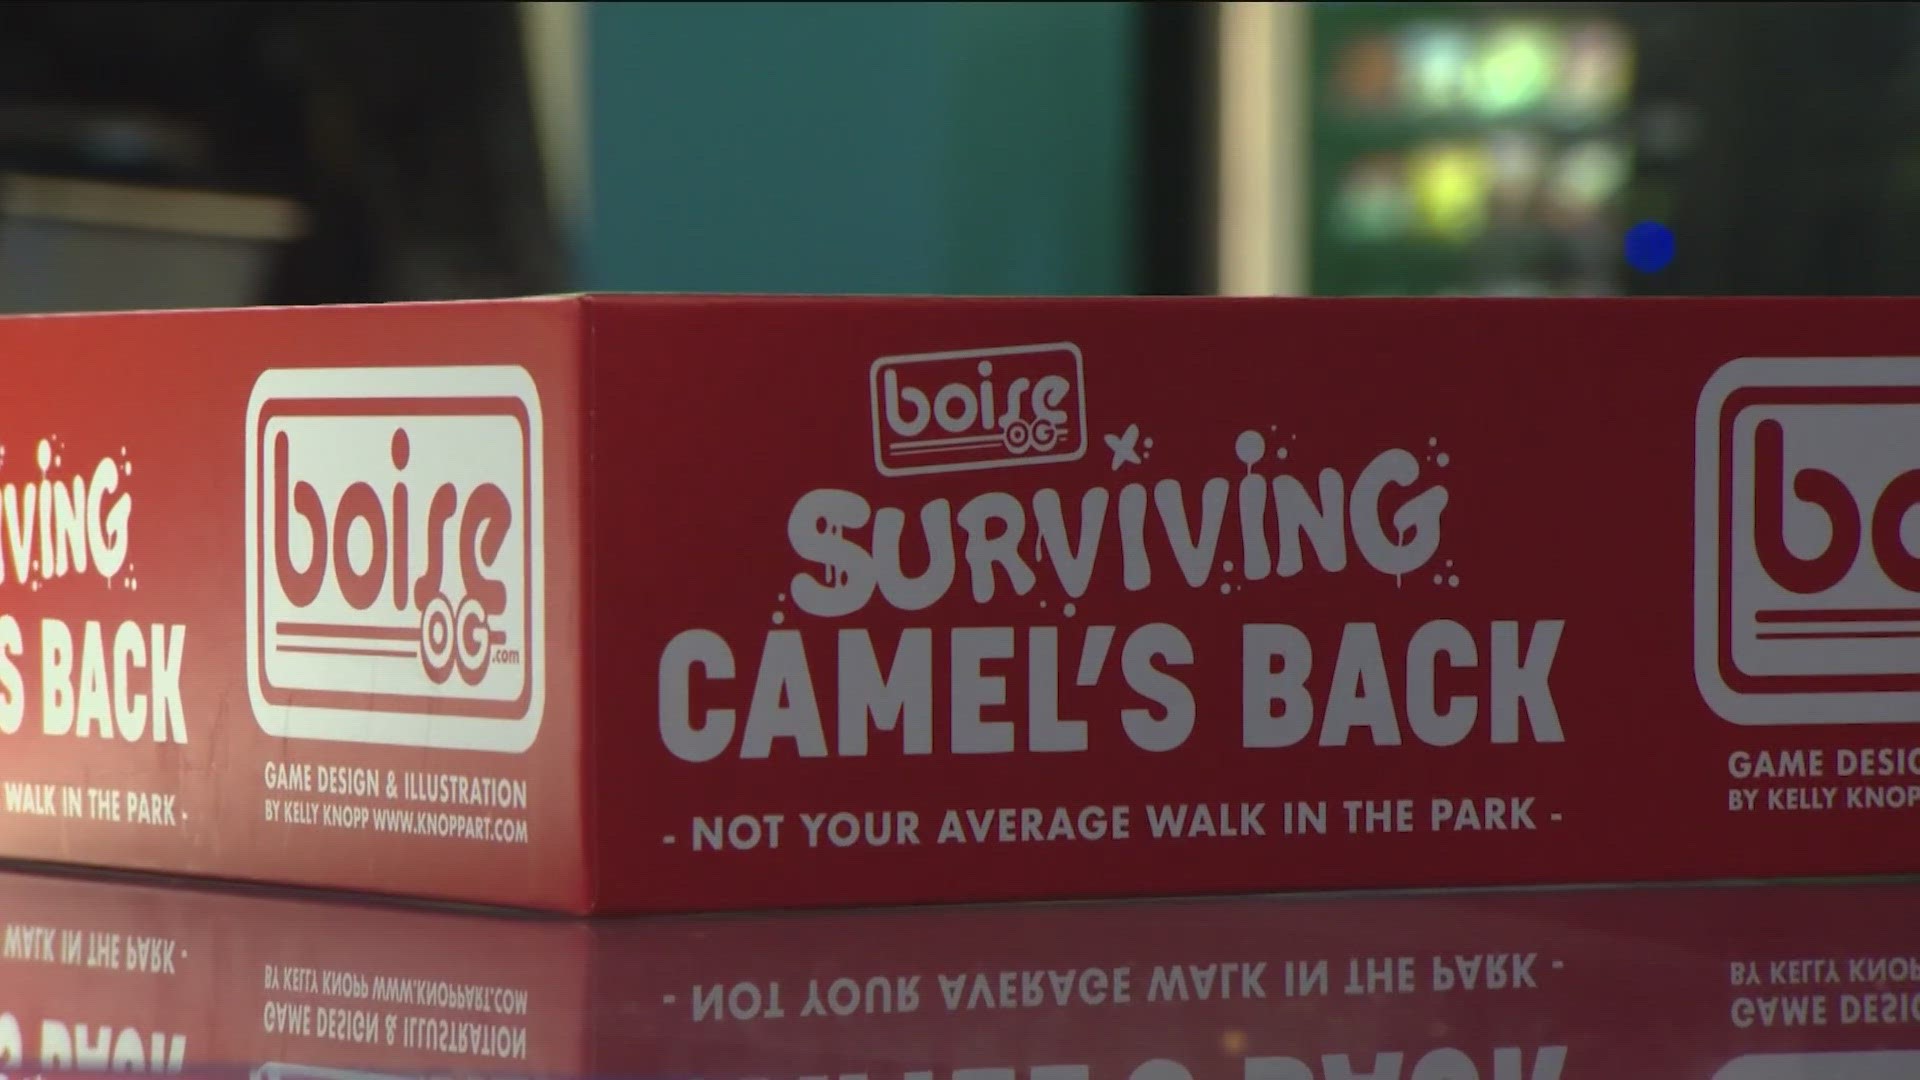 Boise OG publishes 'Surviving Camel's Back' board game, a window